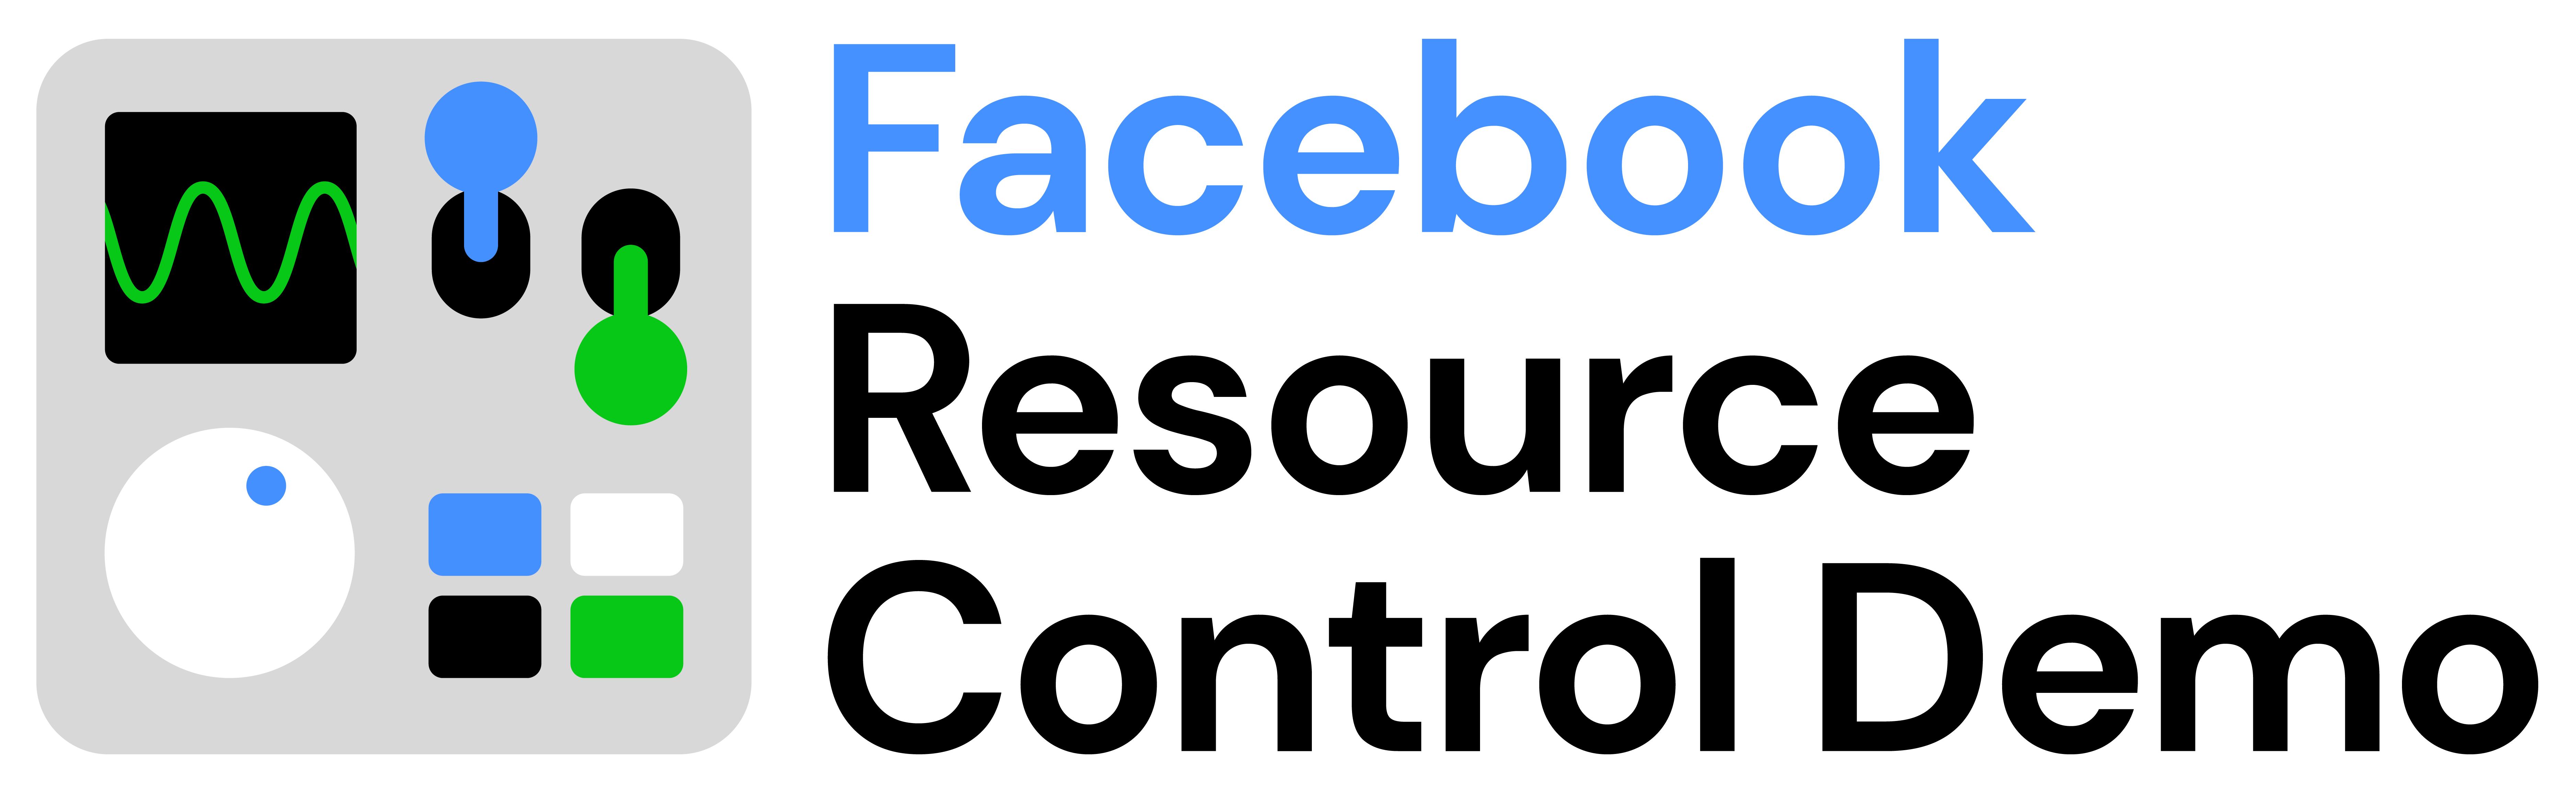 Facebook Resource Control Demo